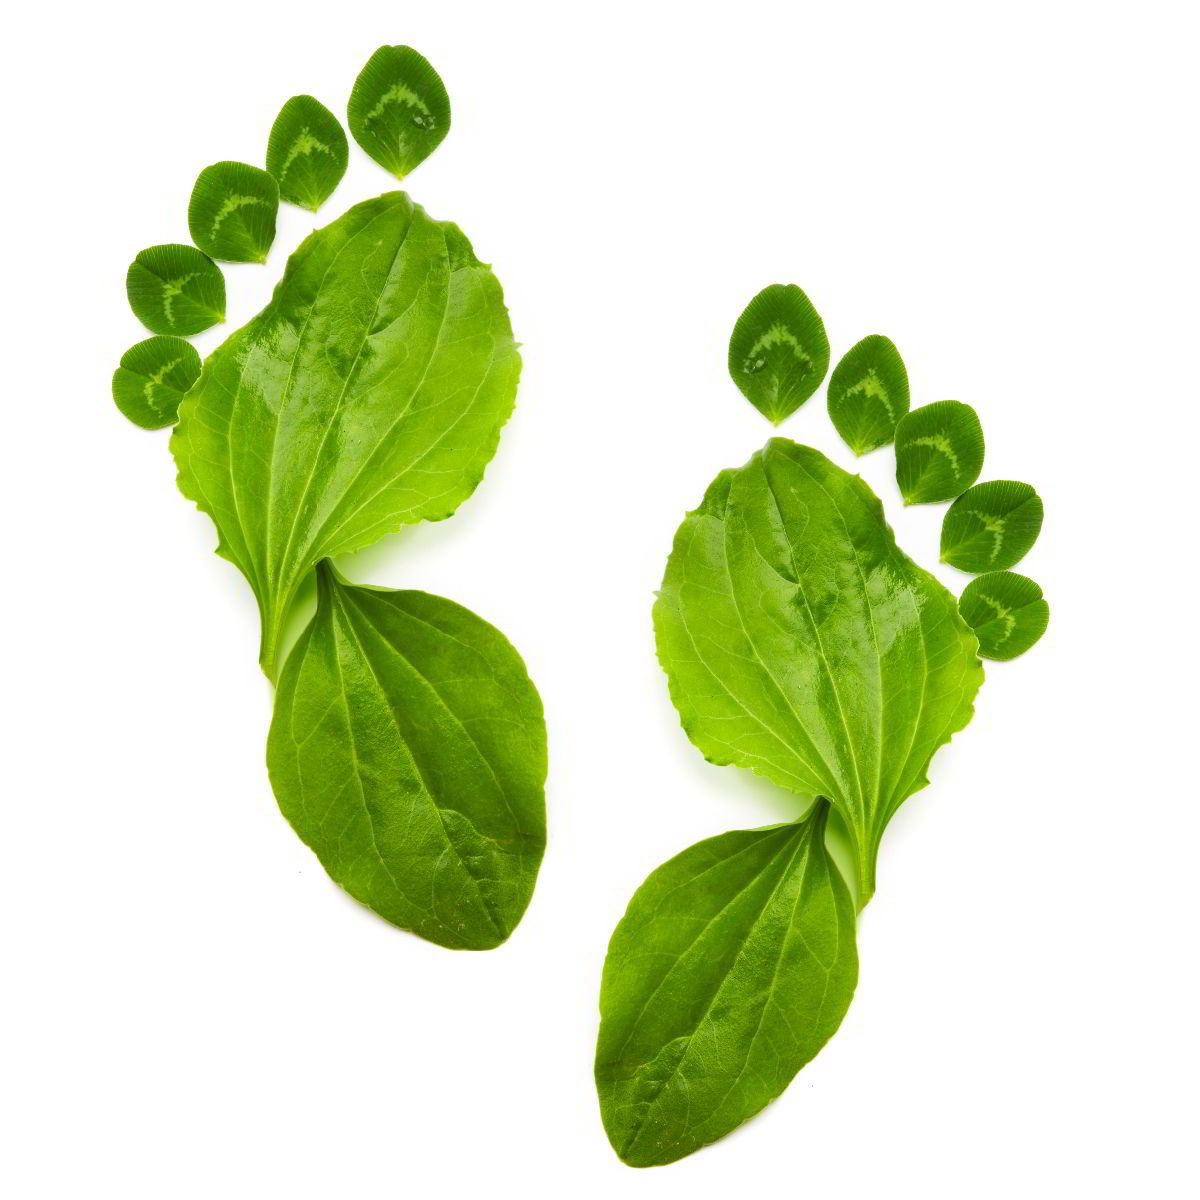 Huella de un pie hecha con hojas de plantas verdes